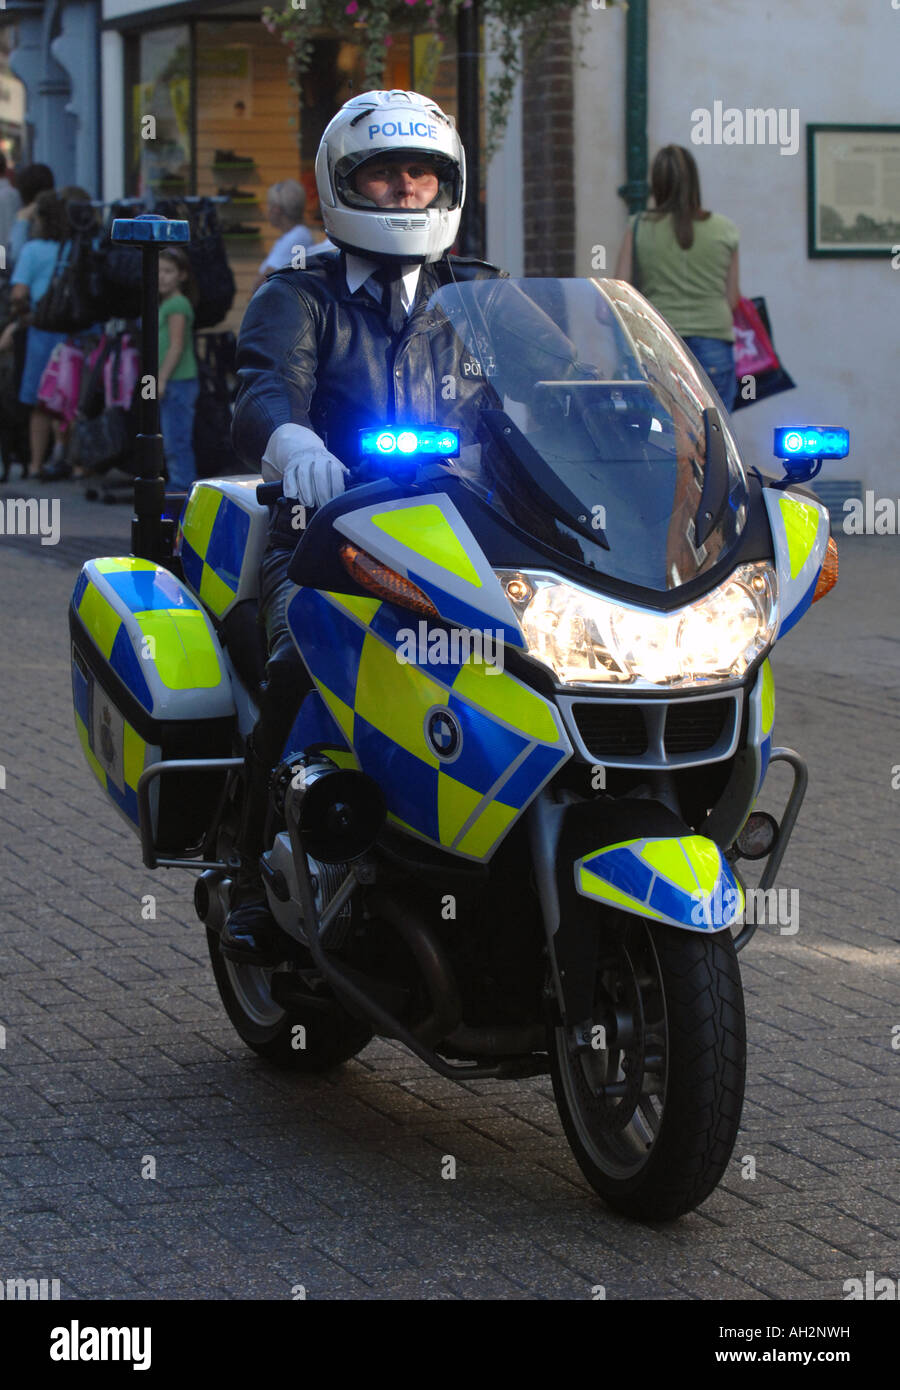 Motard de la police, de la police de moto dans la Grande-bretagne UK Banque D'Images